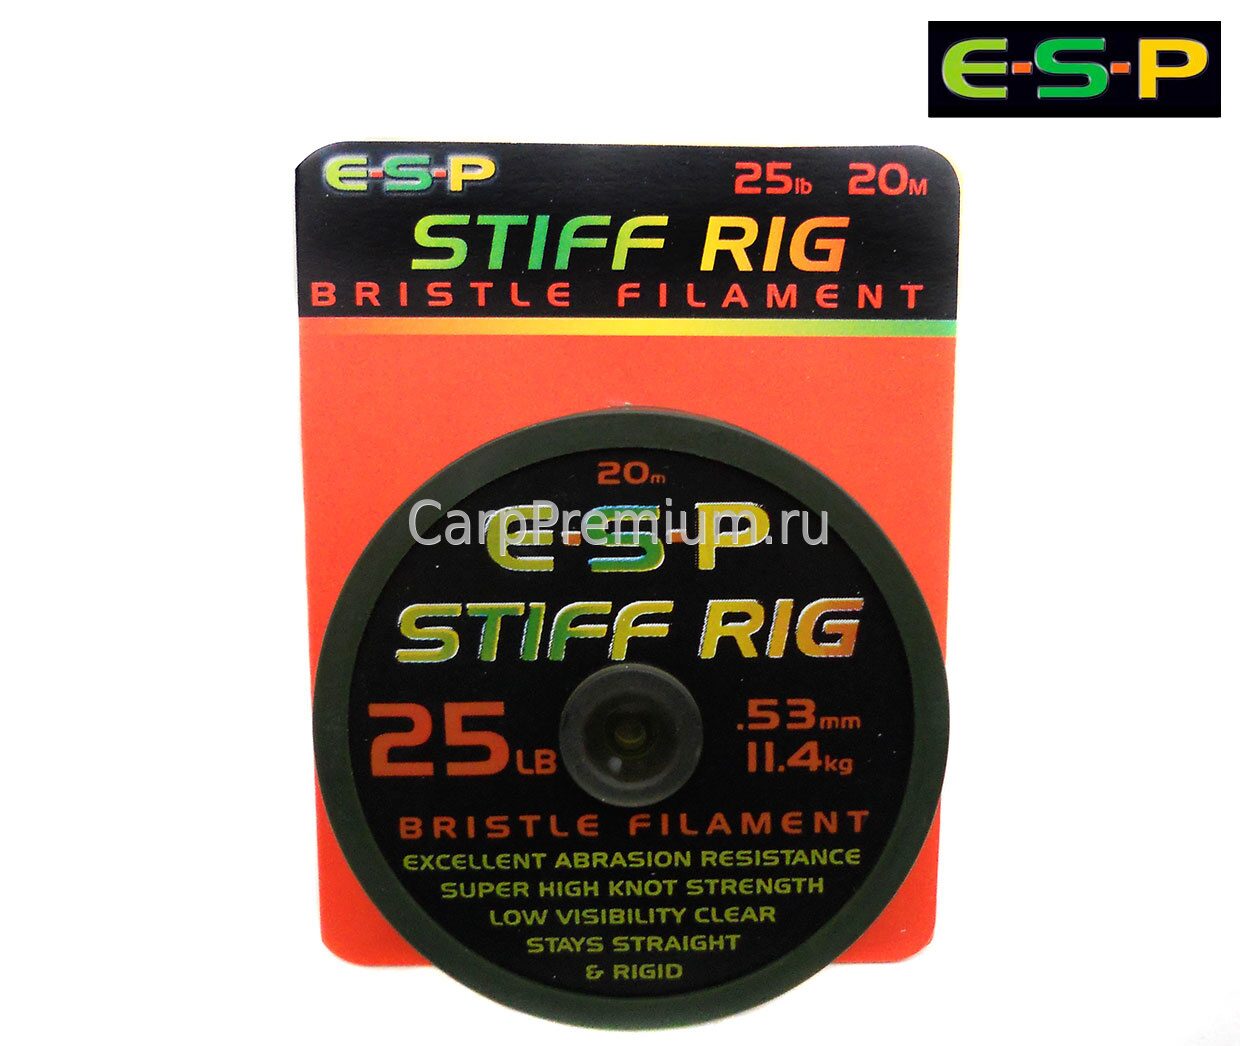 Поводковый материал жёсткий моно ESP (ЕСП) - Stiff Rig Filament 11.4 кг / 25 lb, 20 м